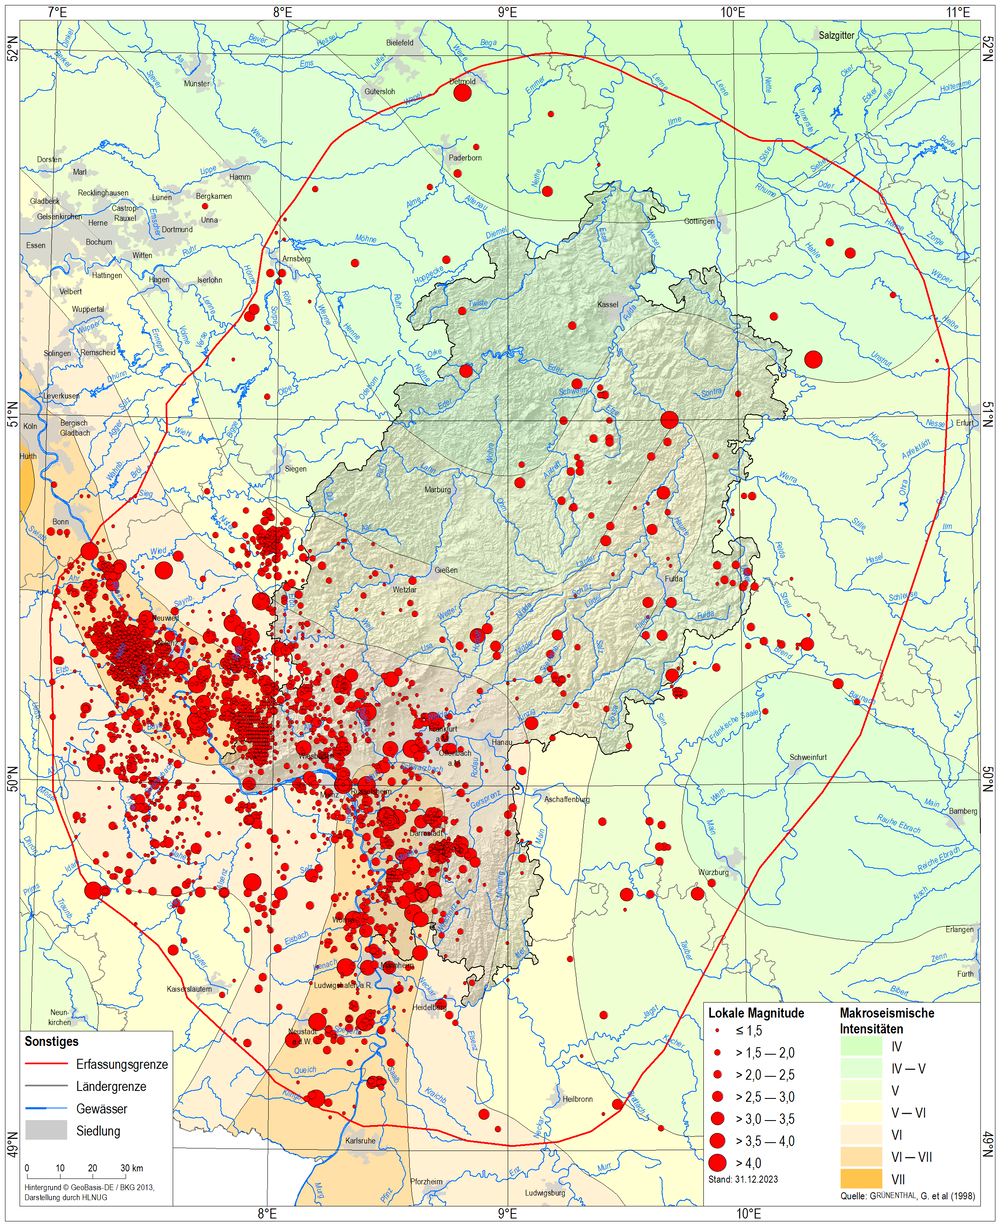 Erdbeben in Hessen nach Hessischem Erdbebenkatalog